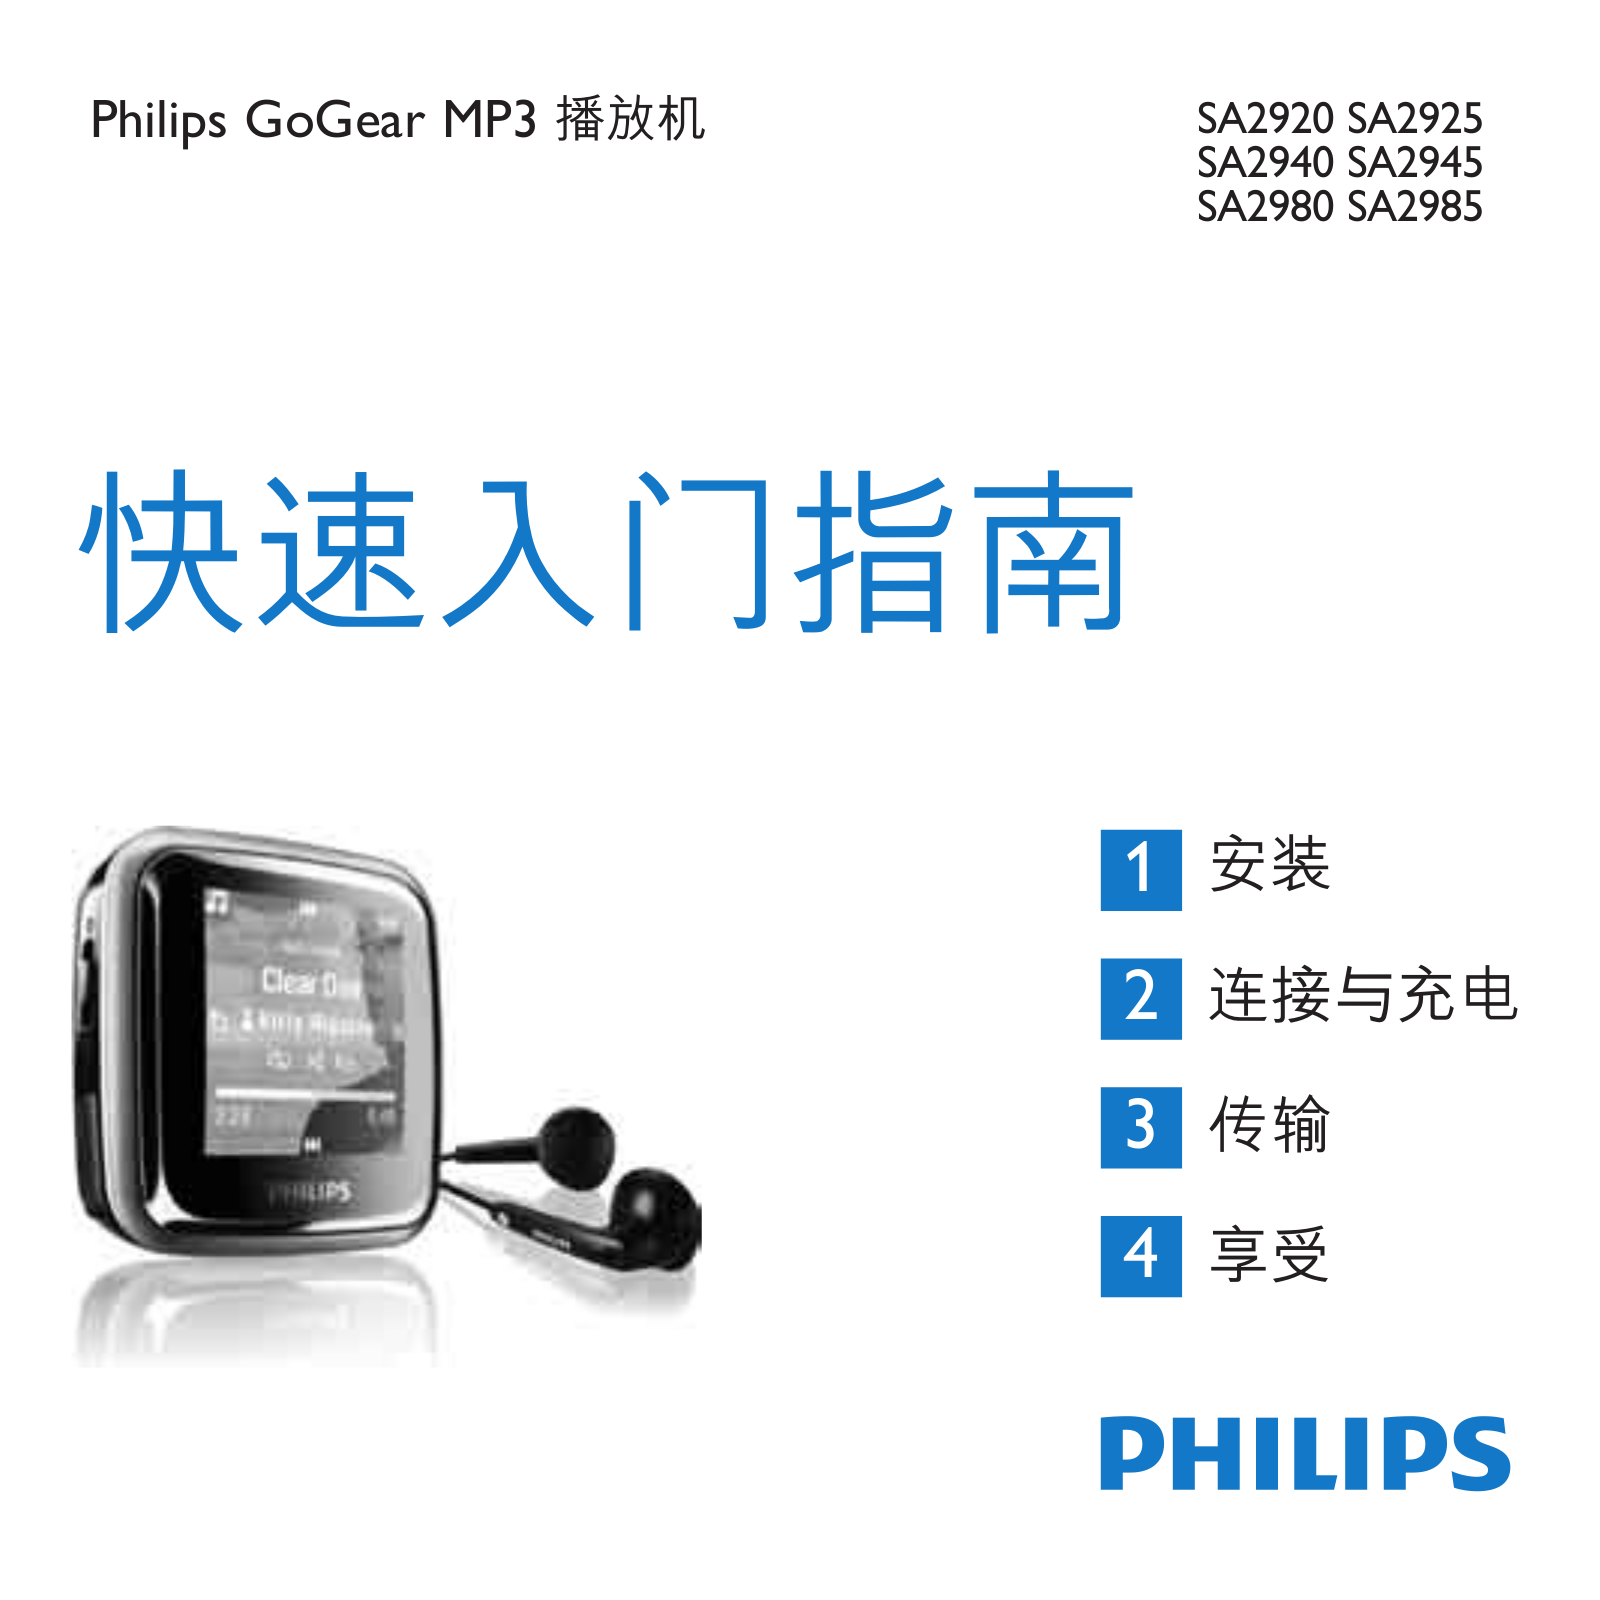 Philips SA2920, SA2925, SA2940, SA2980, SA2945 User Manual